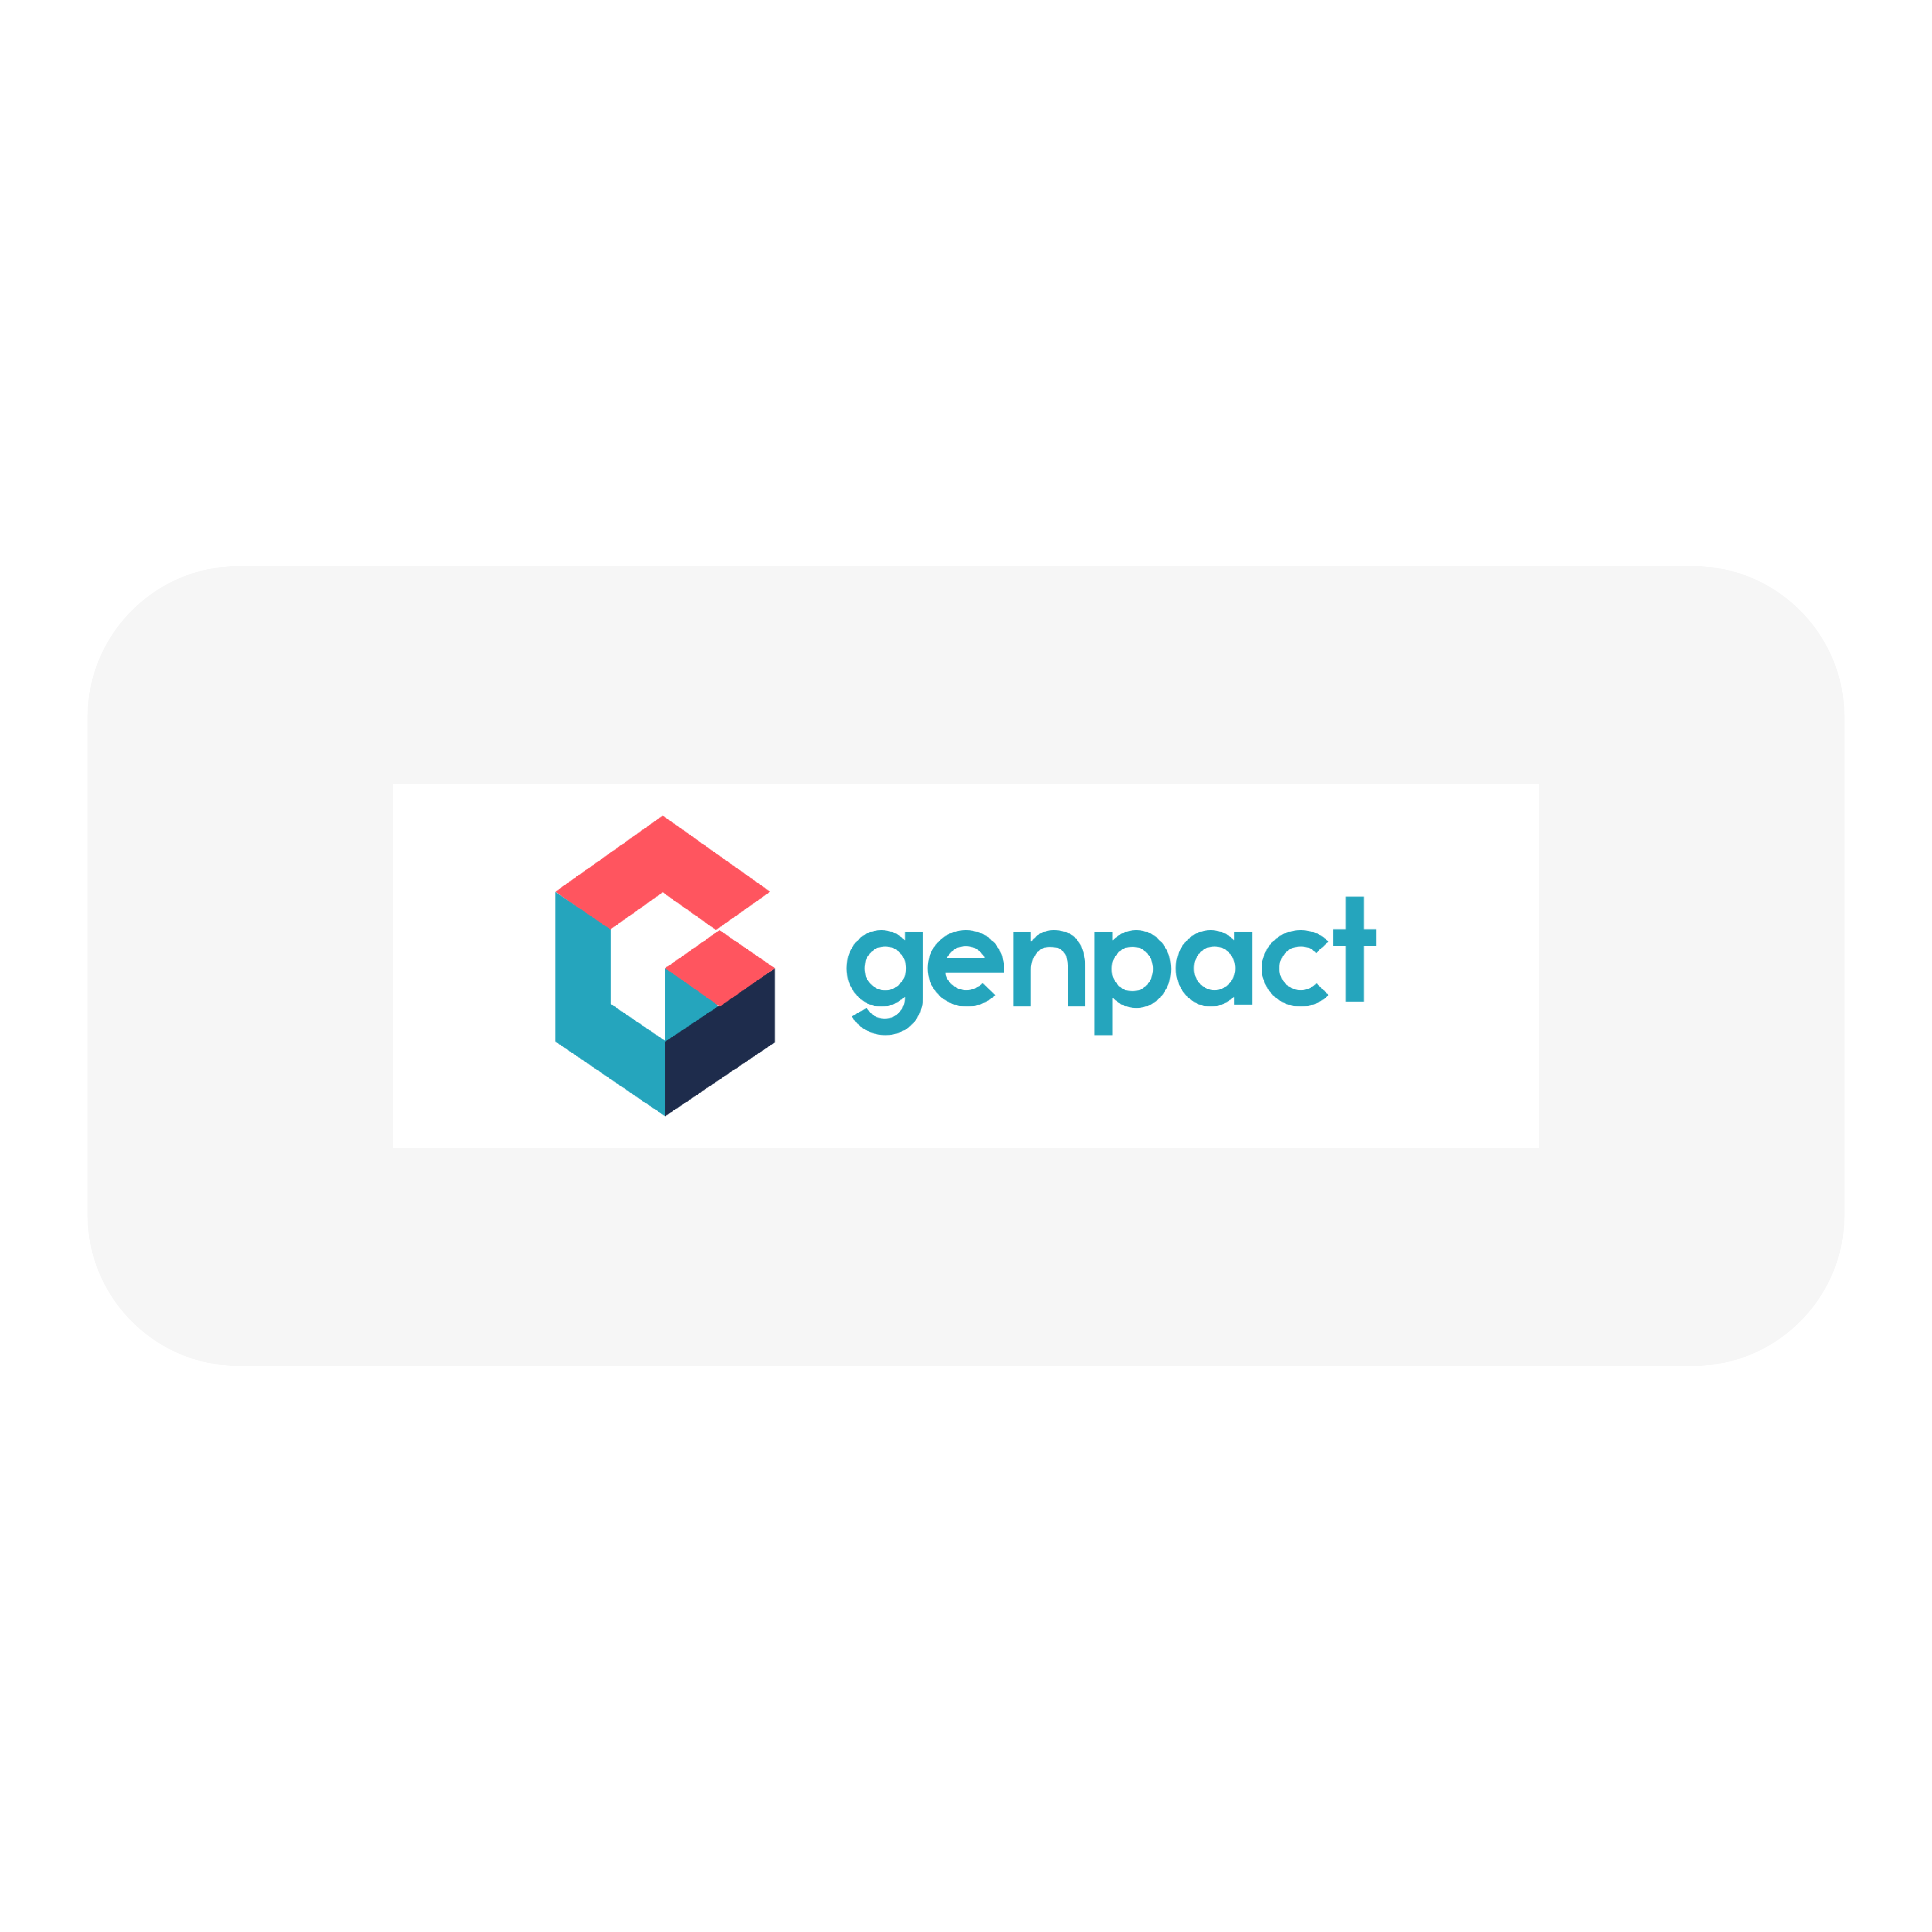 genpact-01